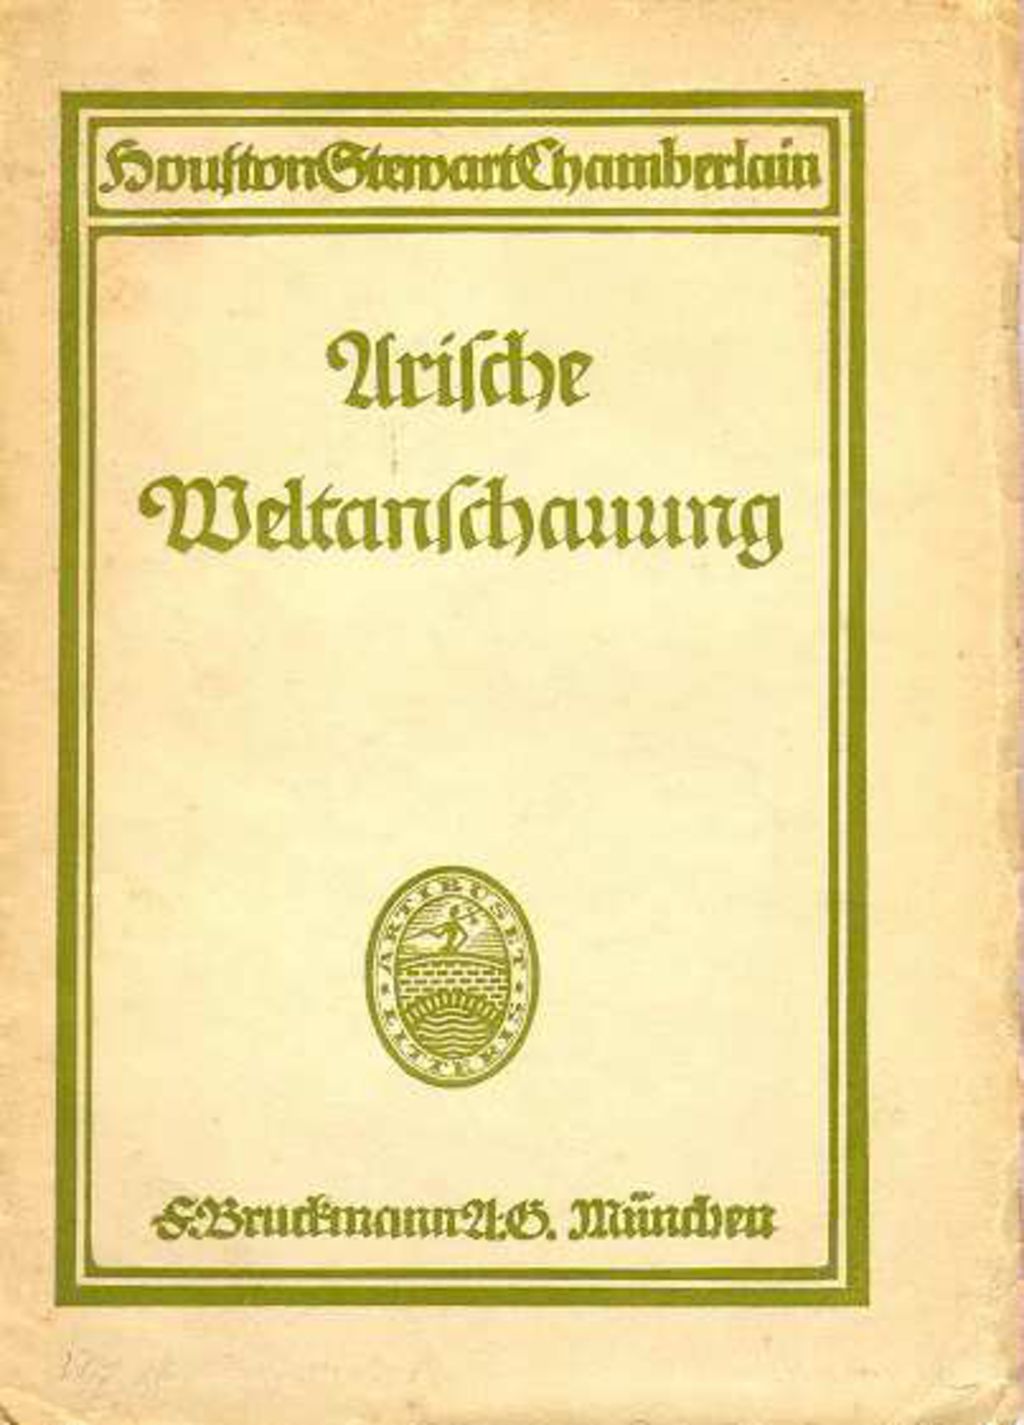 Exponat: Buch: Chamberlain, Houston Stewart "Arische Weltanschauung", 1916